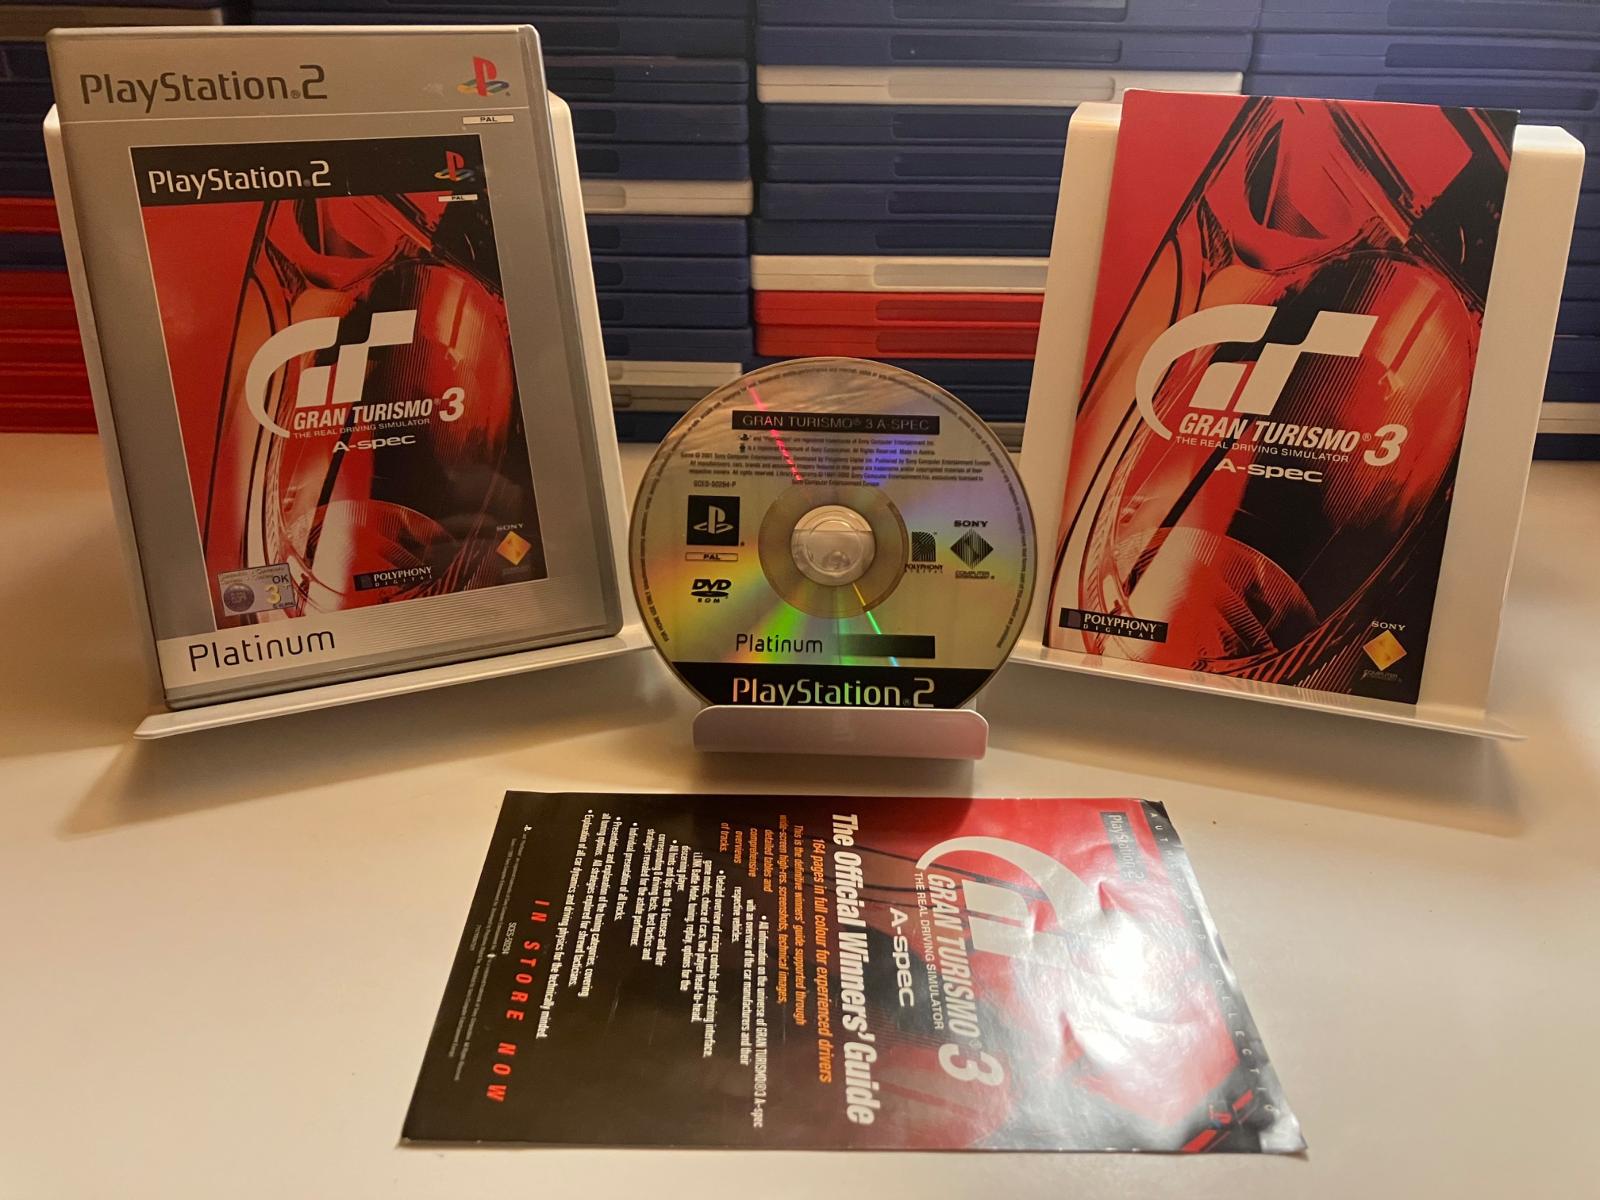 PS2 Gran Turismo 3 A-spec - Platinum - Hry